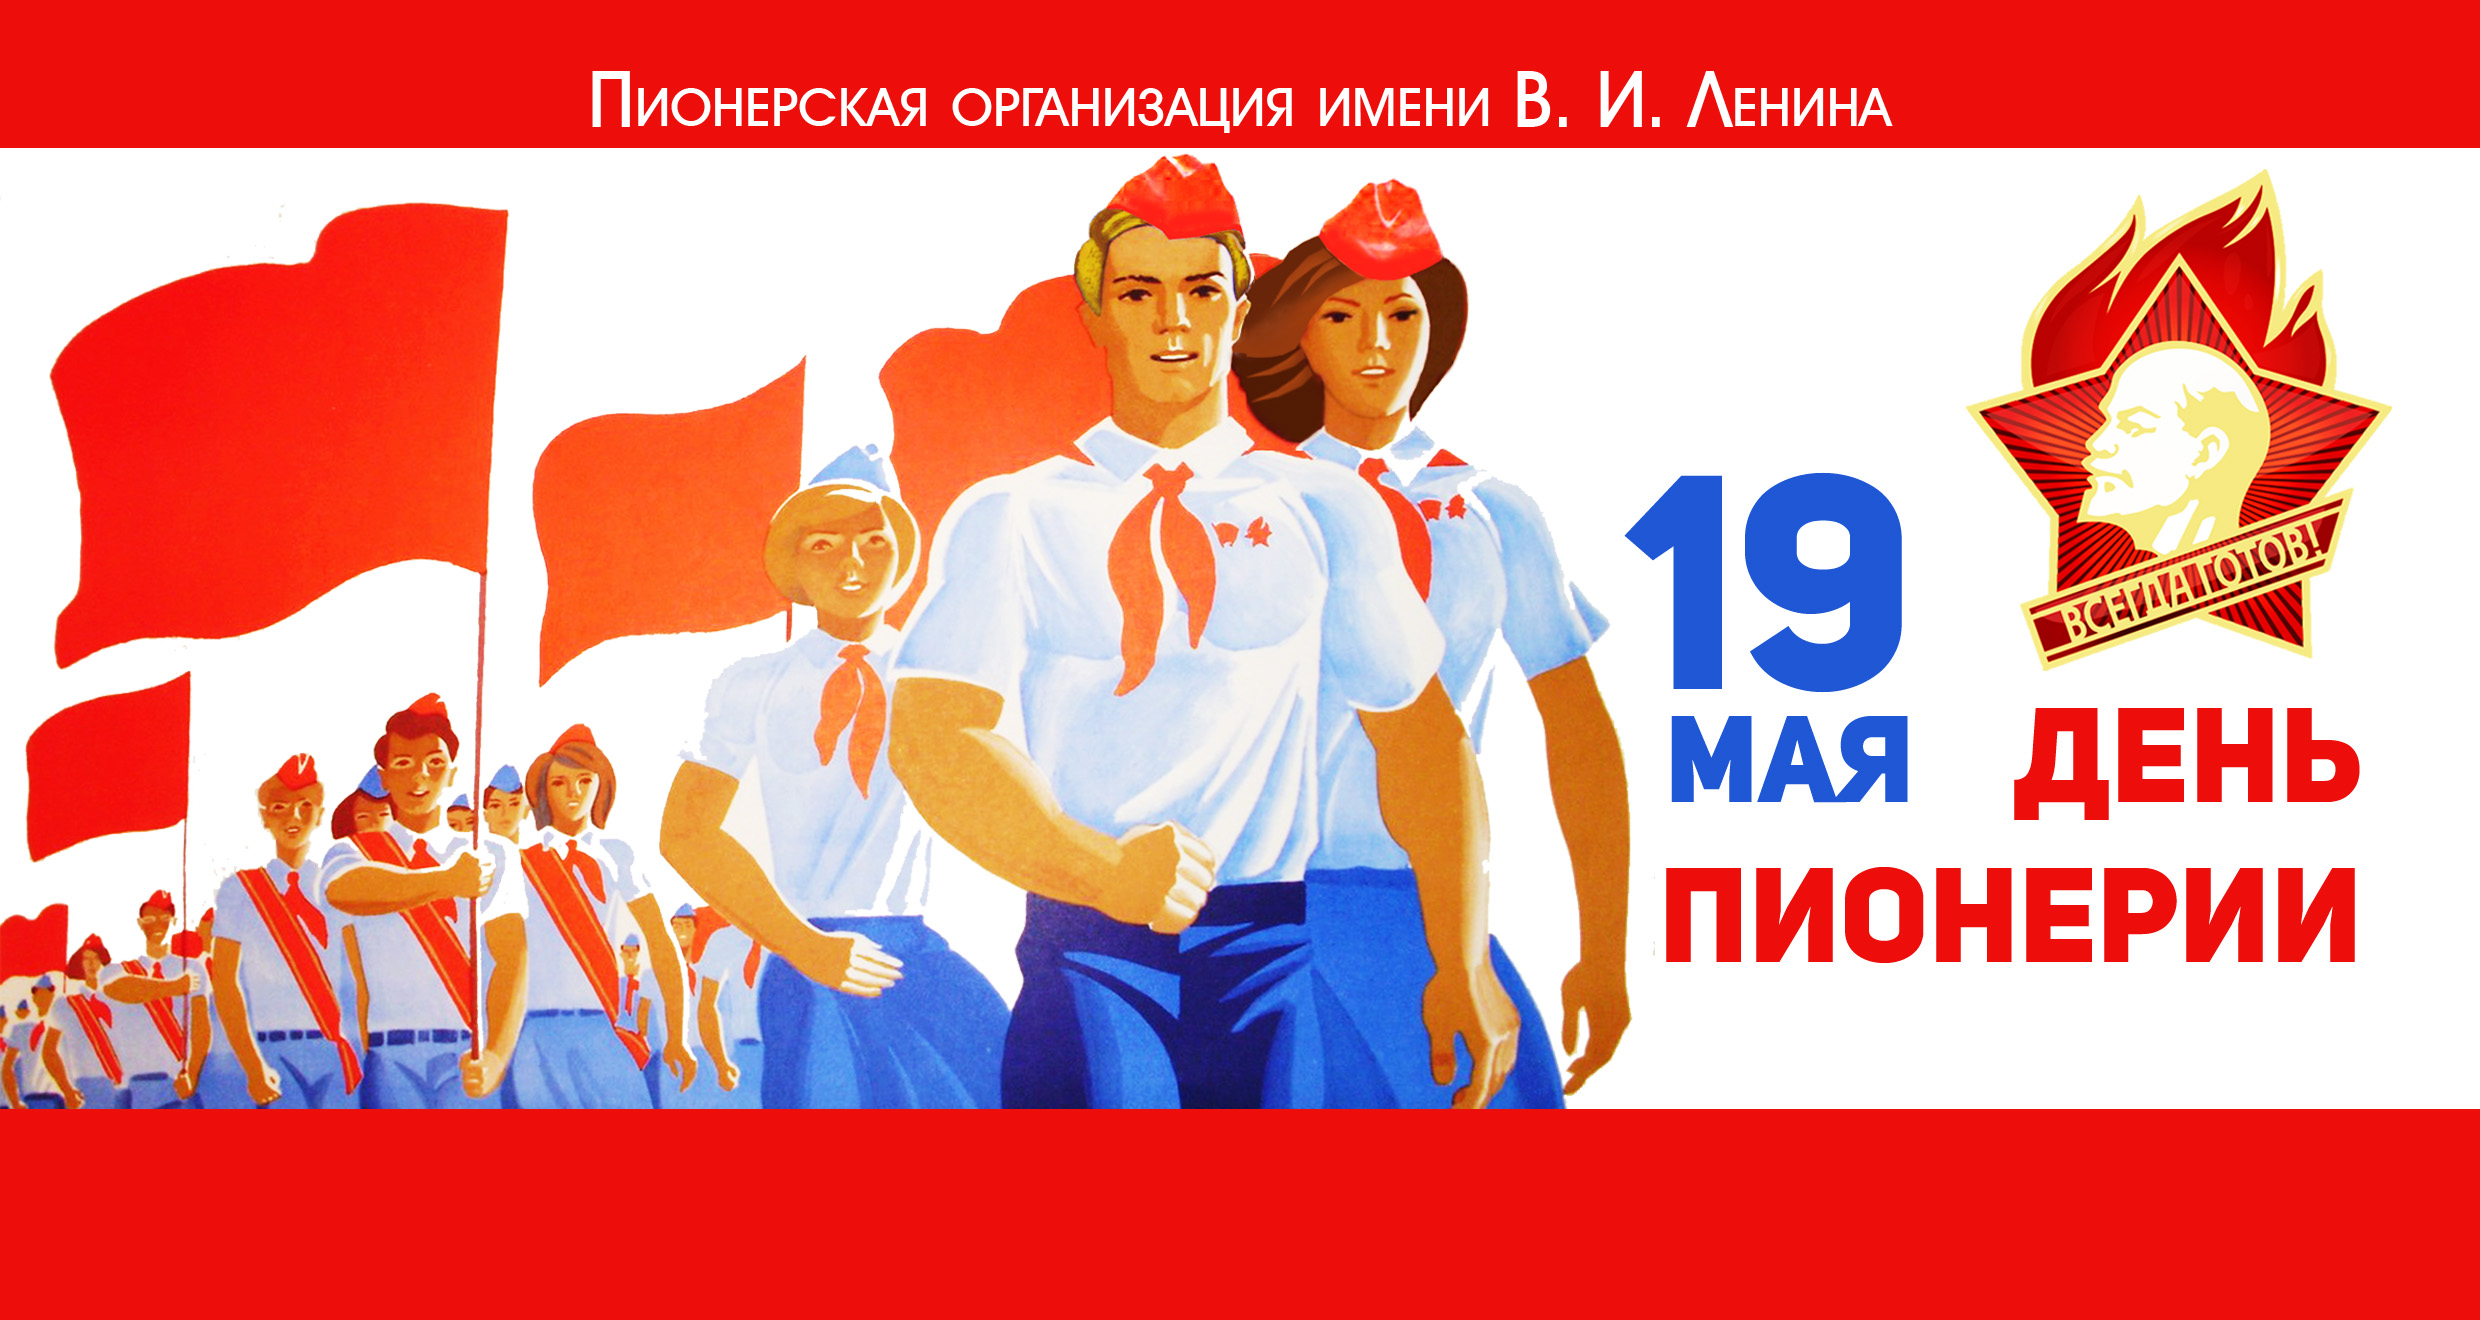 19 мая 2020 г. 19 Мая день Пионерской организации. Дата рождения Пионерской организации в СССР. 100 Лет Пионерской организации. День пи.